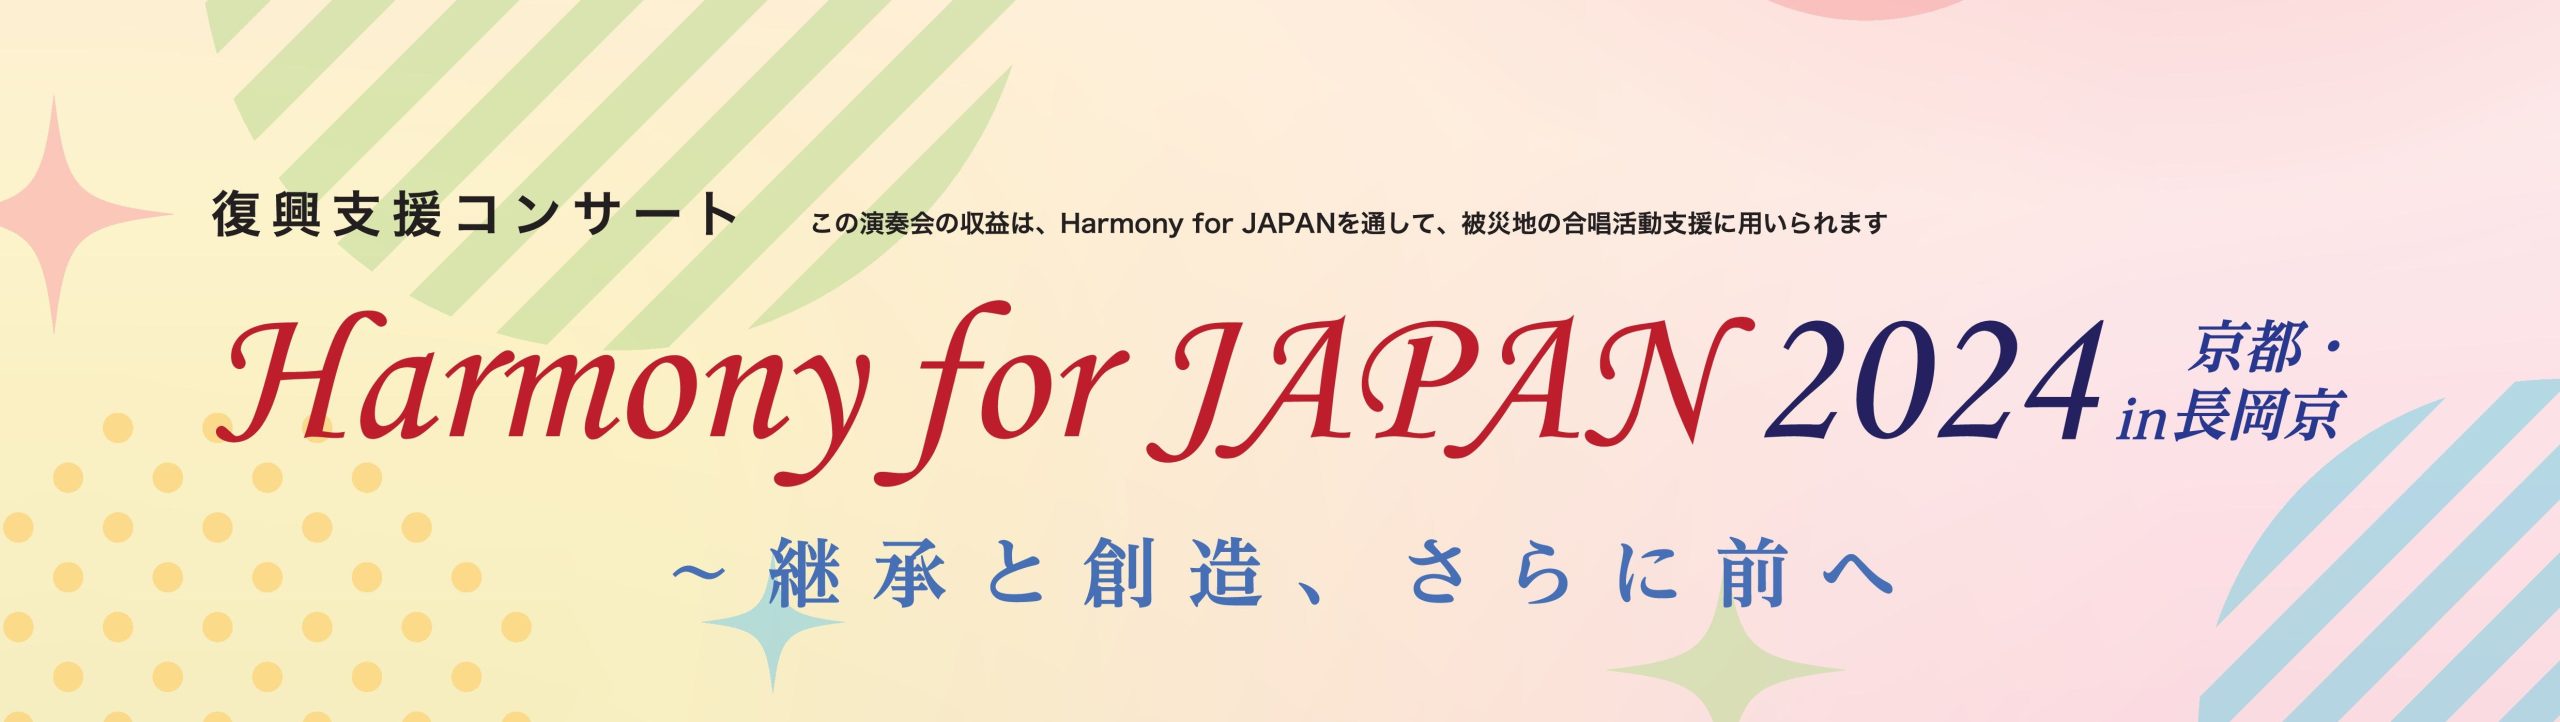 復興支援コンサート「Harmony for JAPAN 2024」